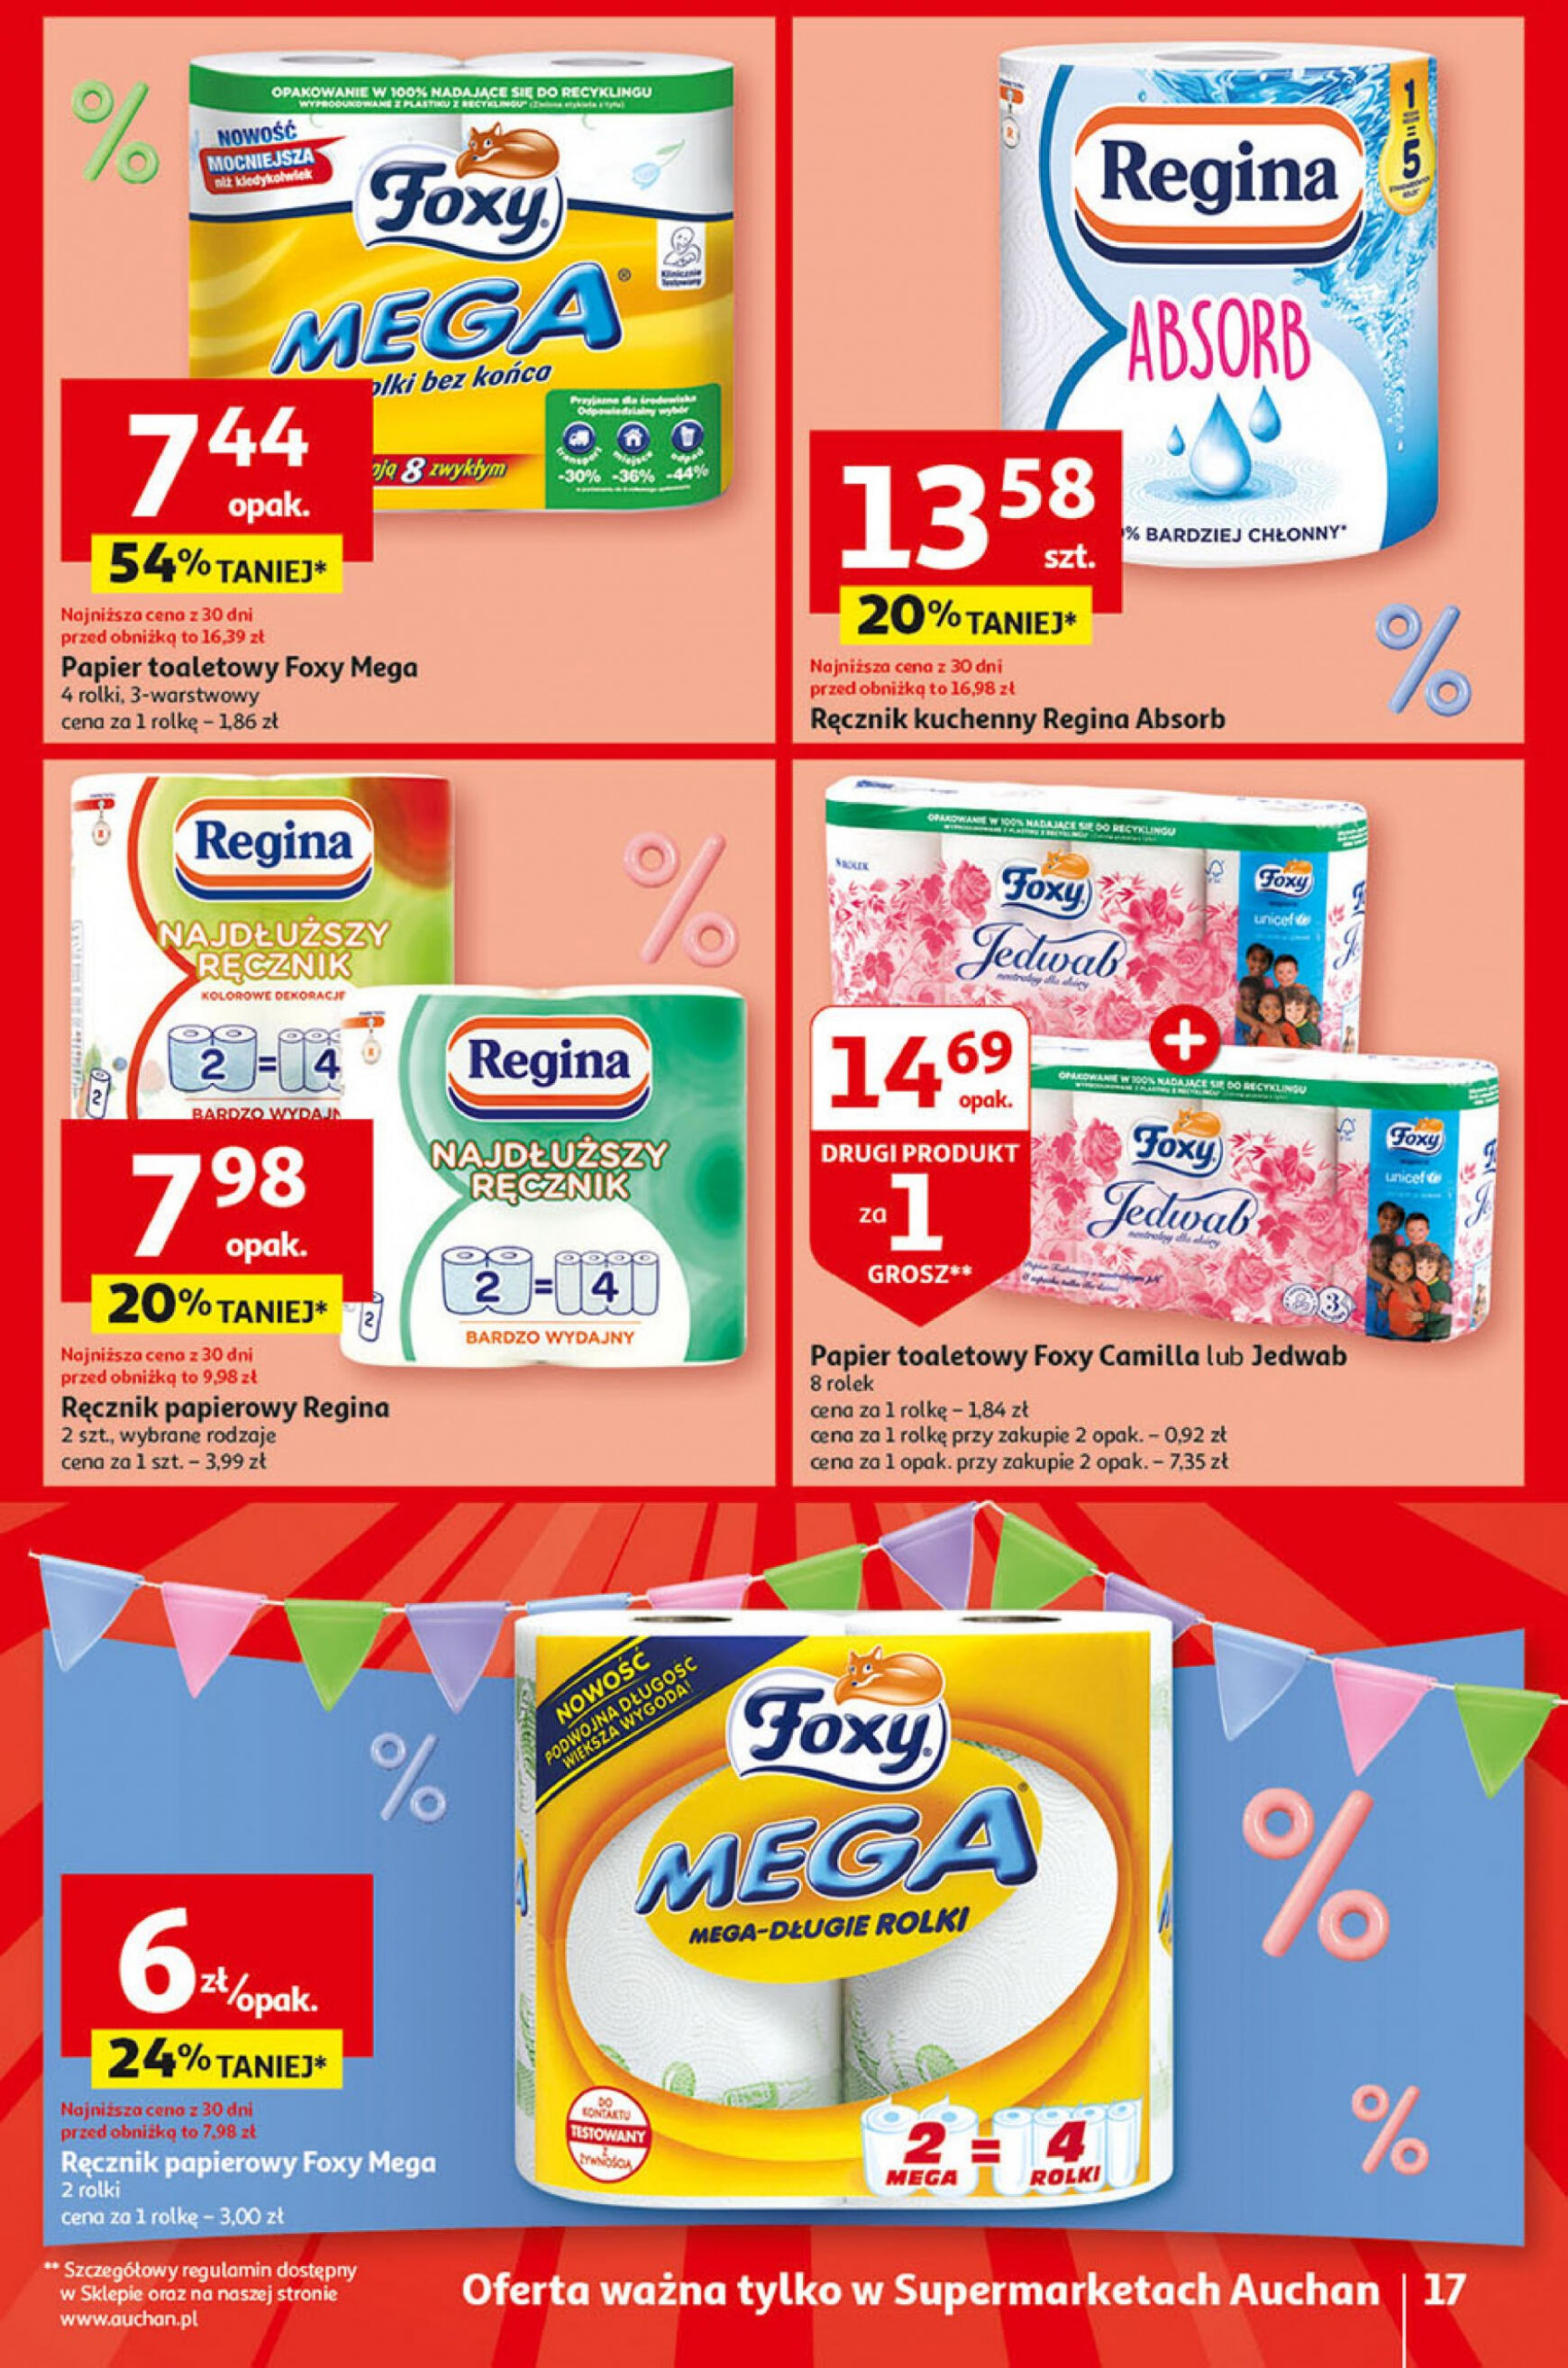 auchan - Supermarket Auchan - Gazetka Jeszcze taniej na urodziny gazetka aktualna ważna od 25.04. - 30.04. - page: 17